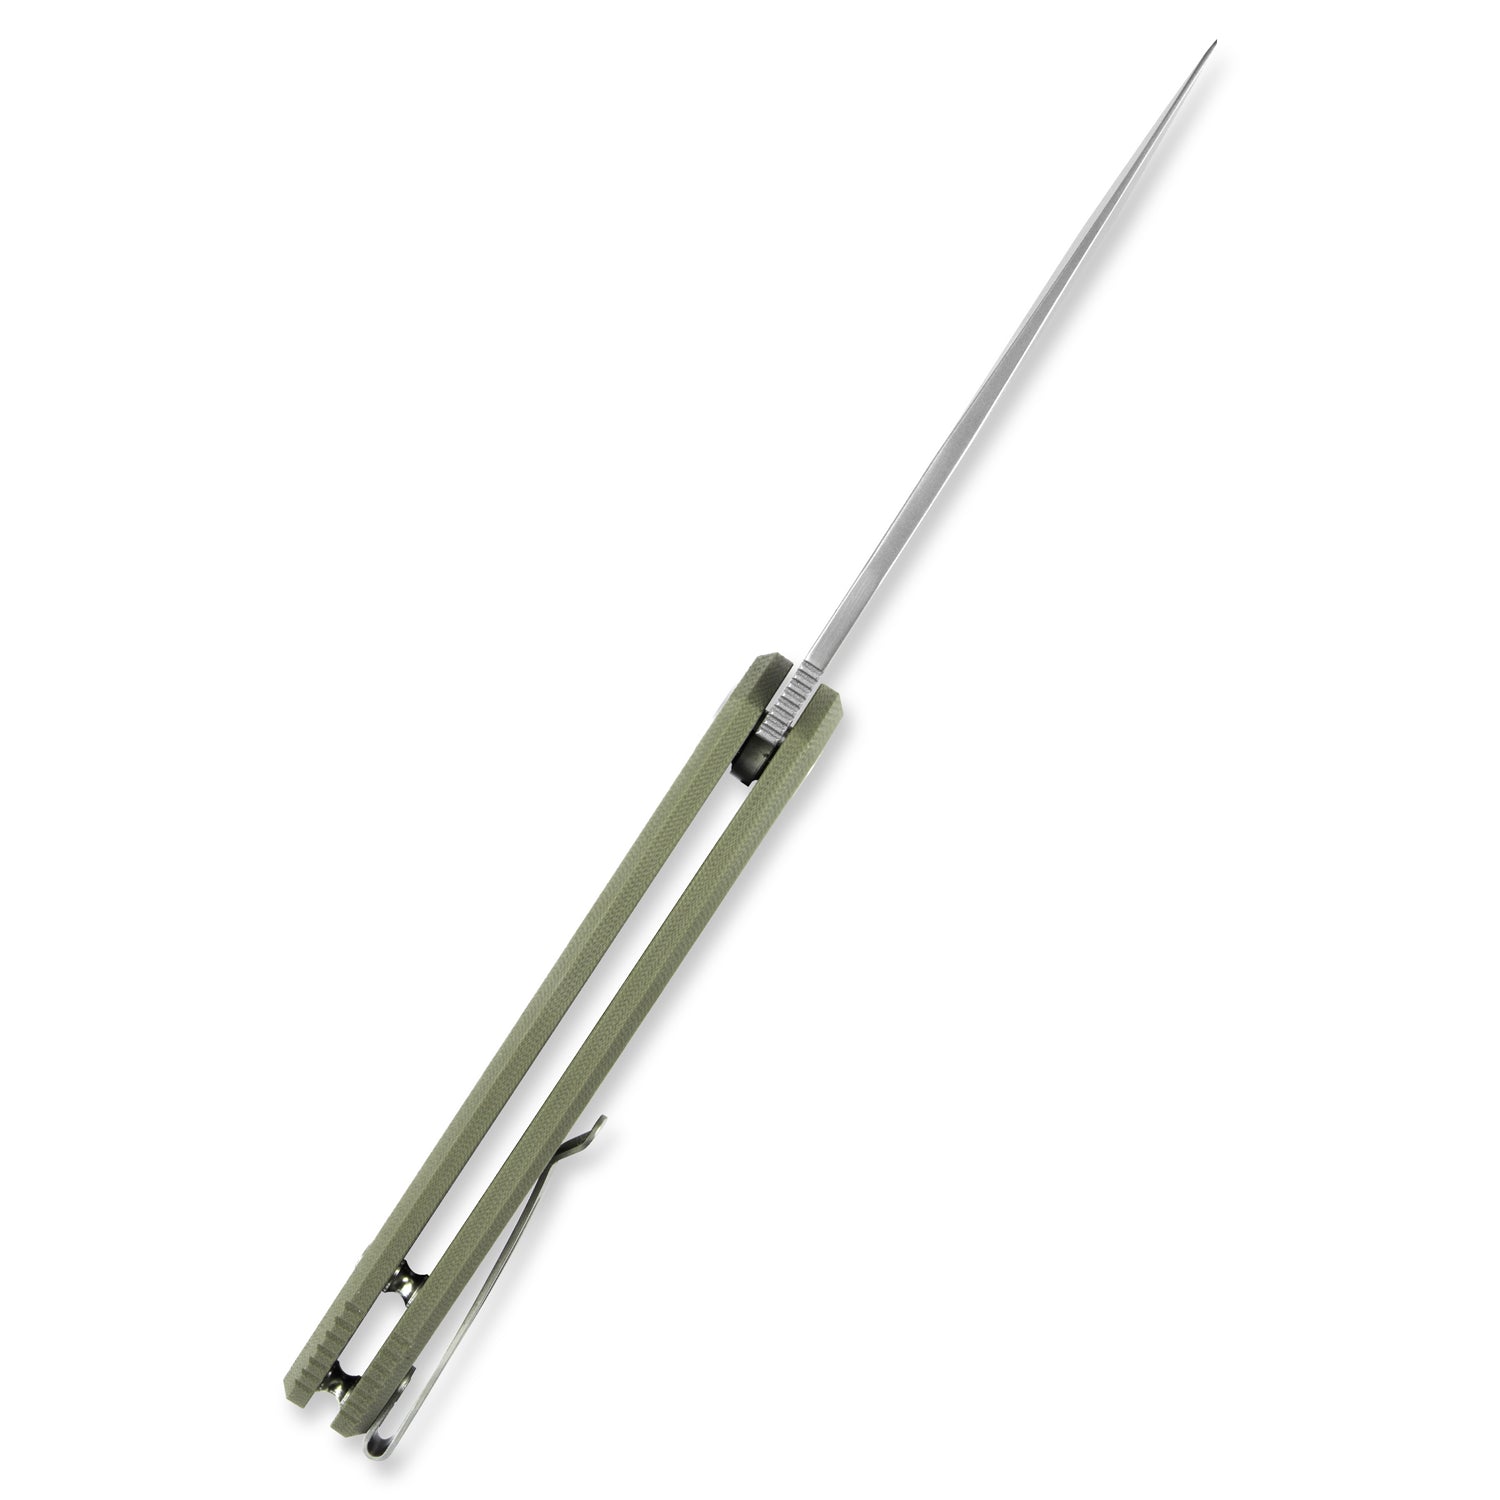 Kubey Darkness Liner Lock Flipper Folding Knife Green G10 Handle 4.72" Beadblast D2 KU003B